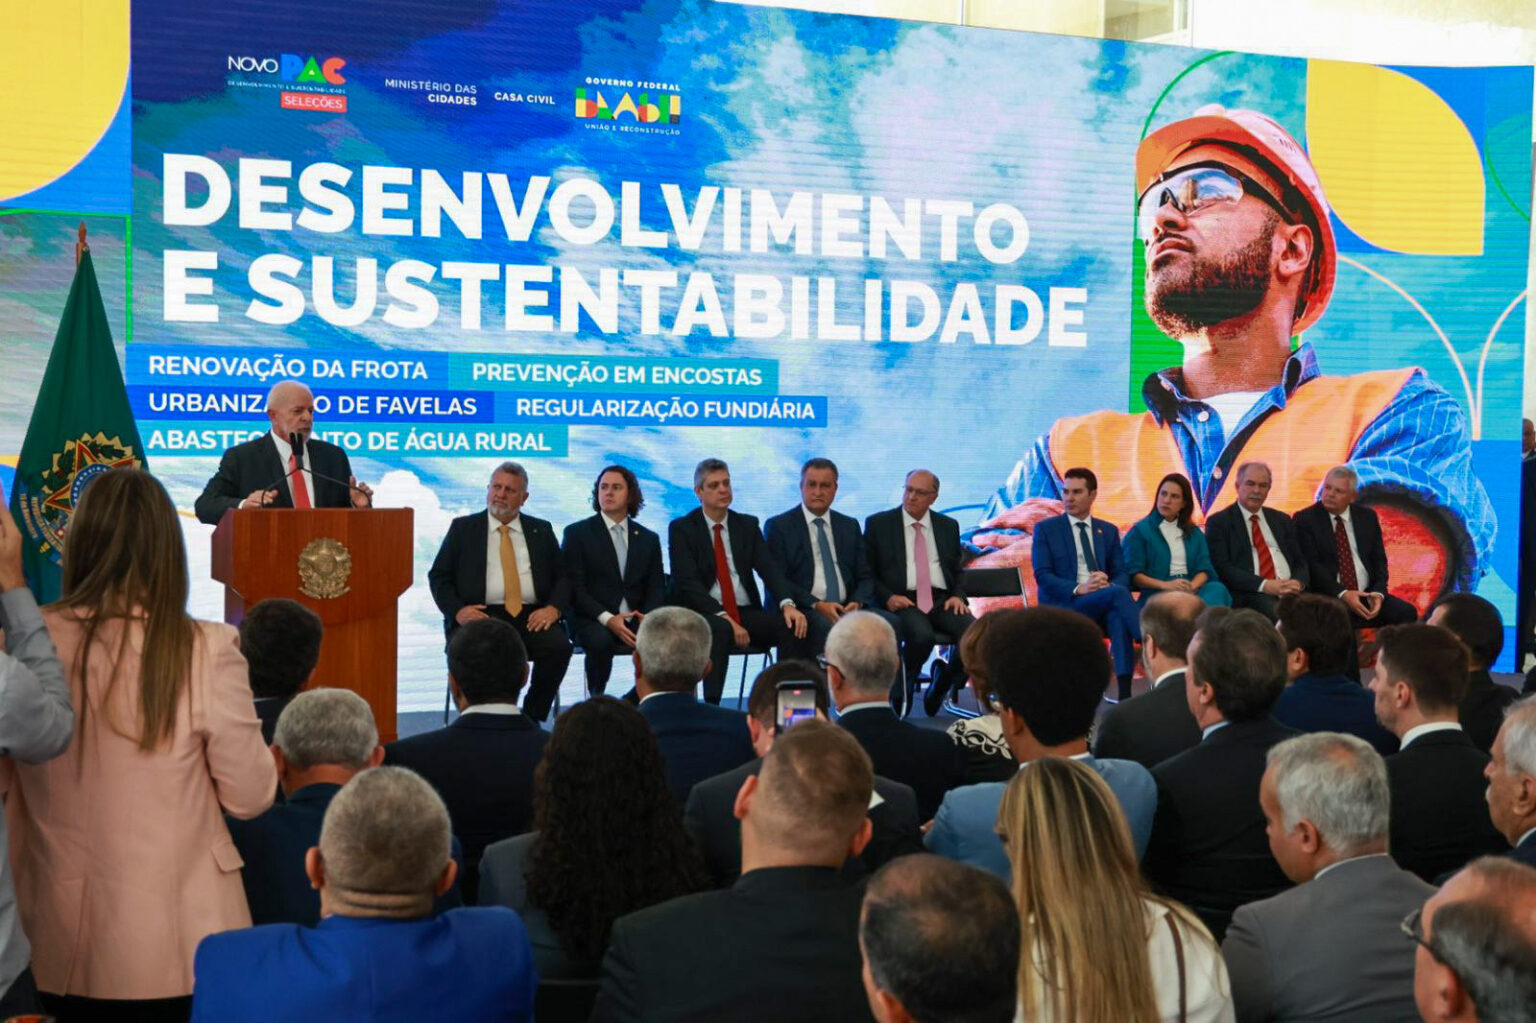  Governadora Raquel Lyra celebra resultados do Novo PAC Seleções Cidades